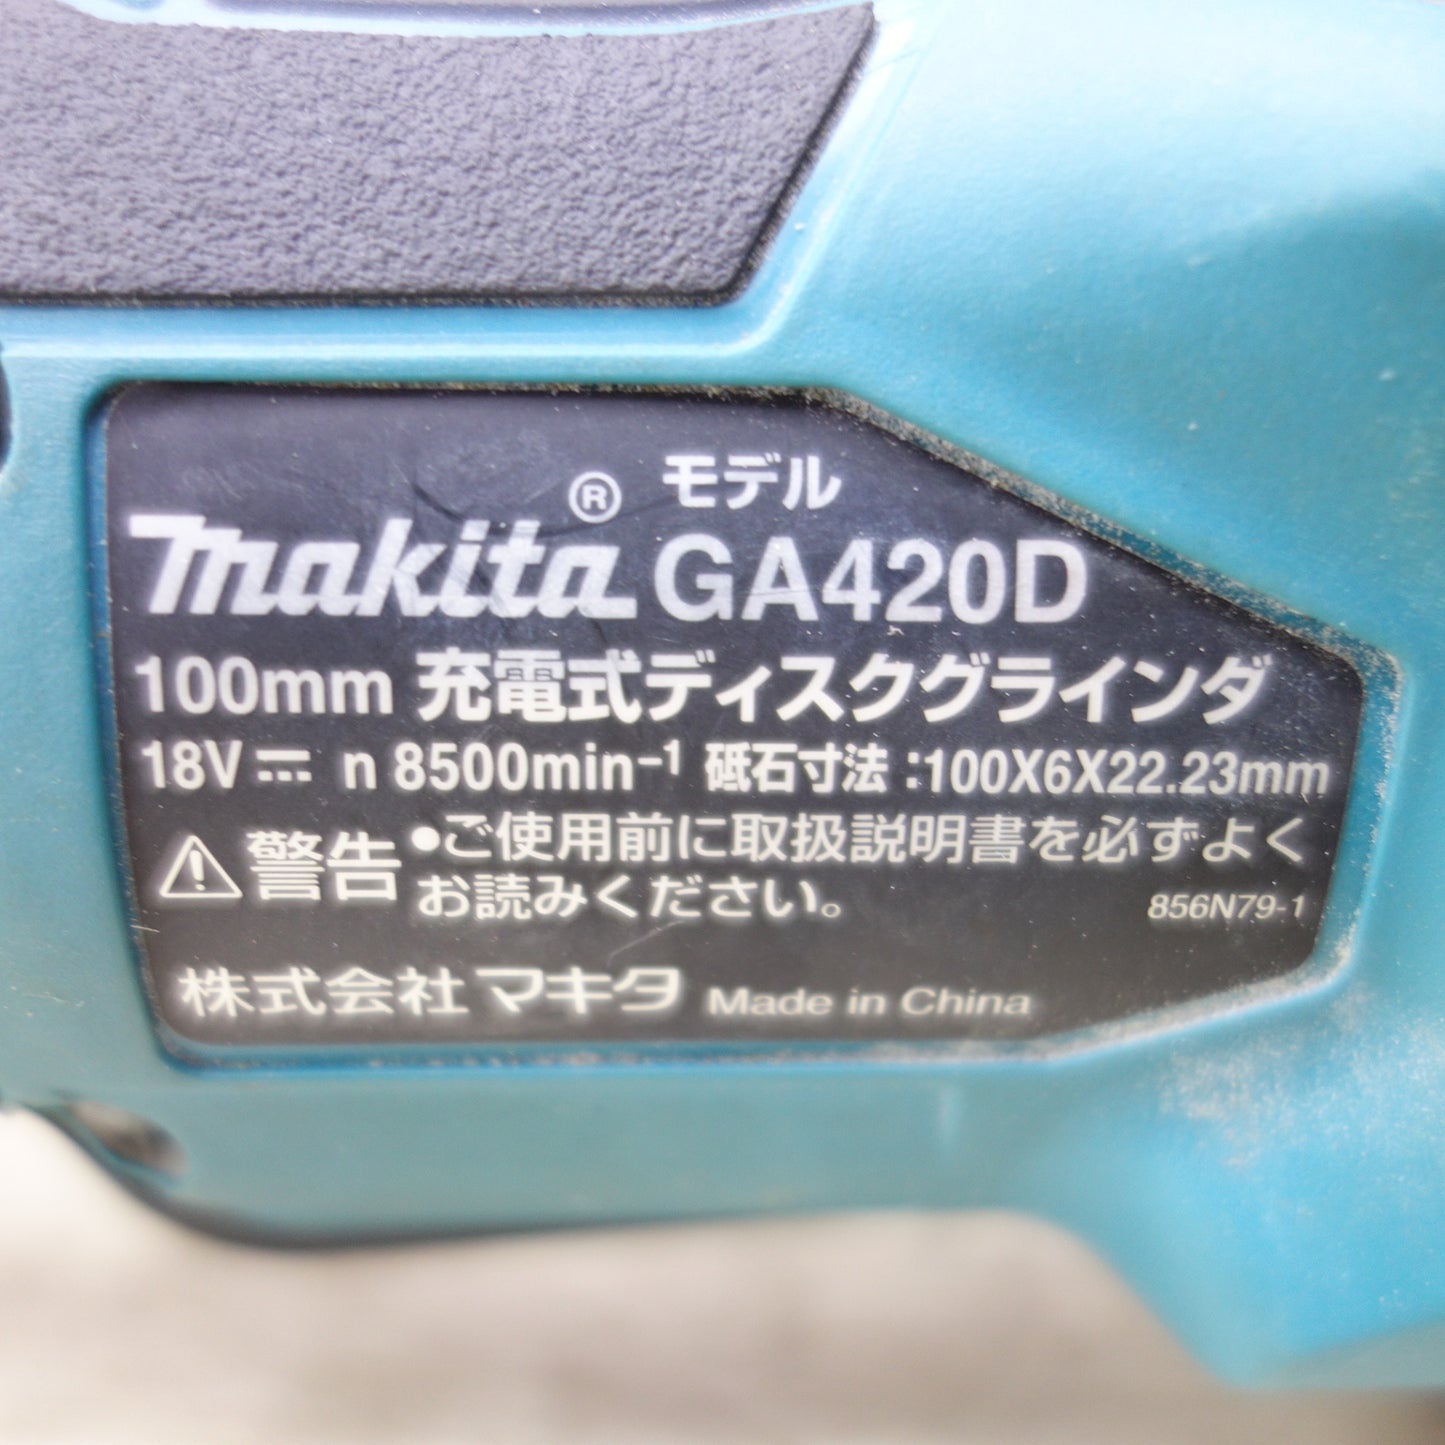 [送料無料] ◆makita マキタ 100mm 充電式ディスクグラインダ GA420D 18V 替刃付き 電動工具 研磨機 本体のみ◆